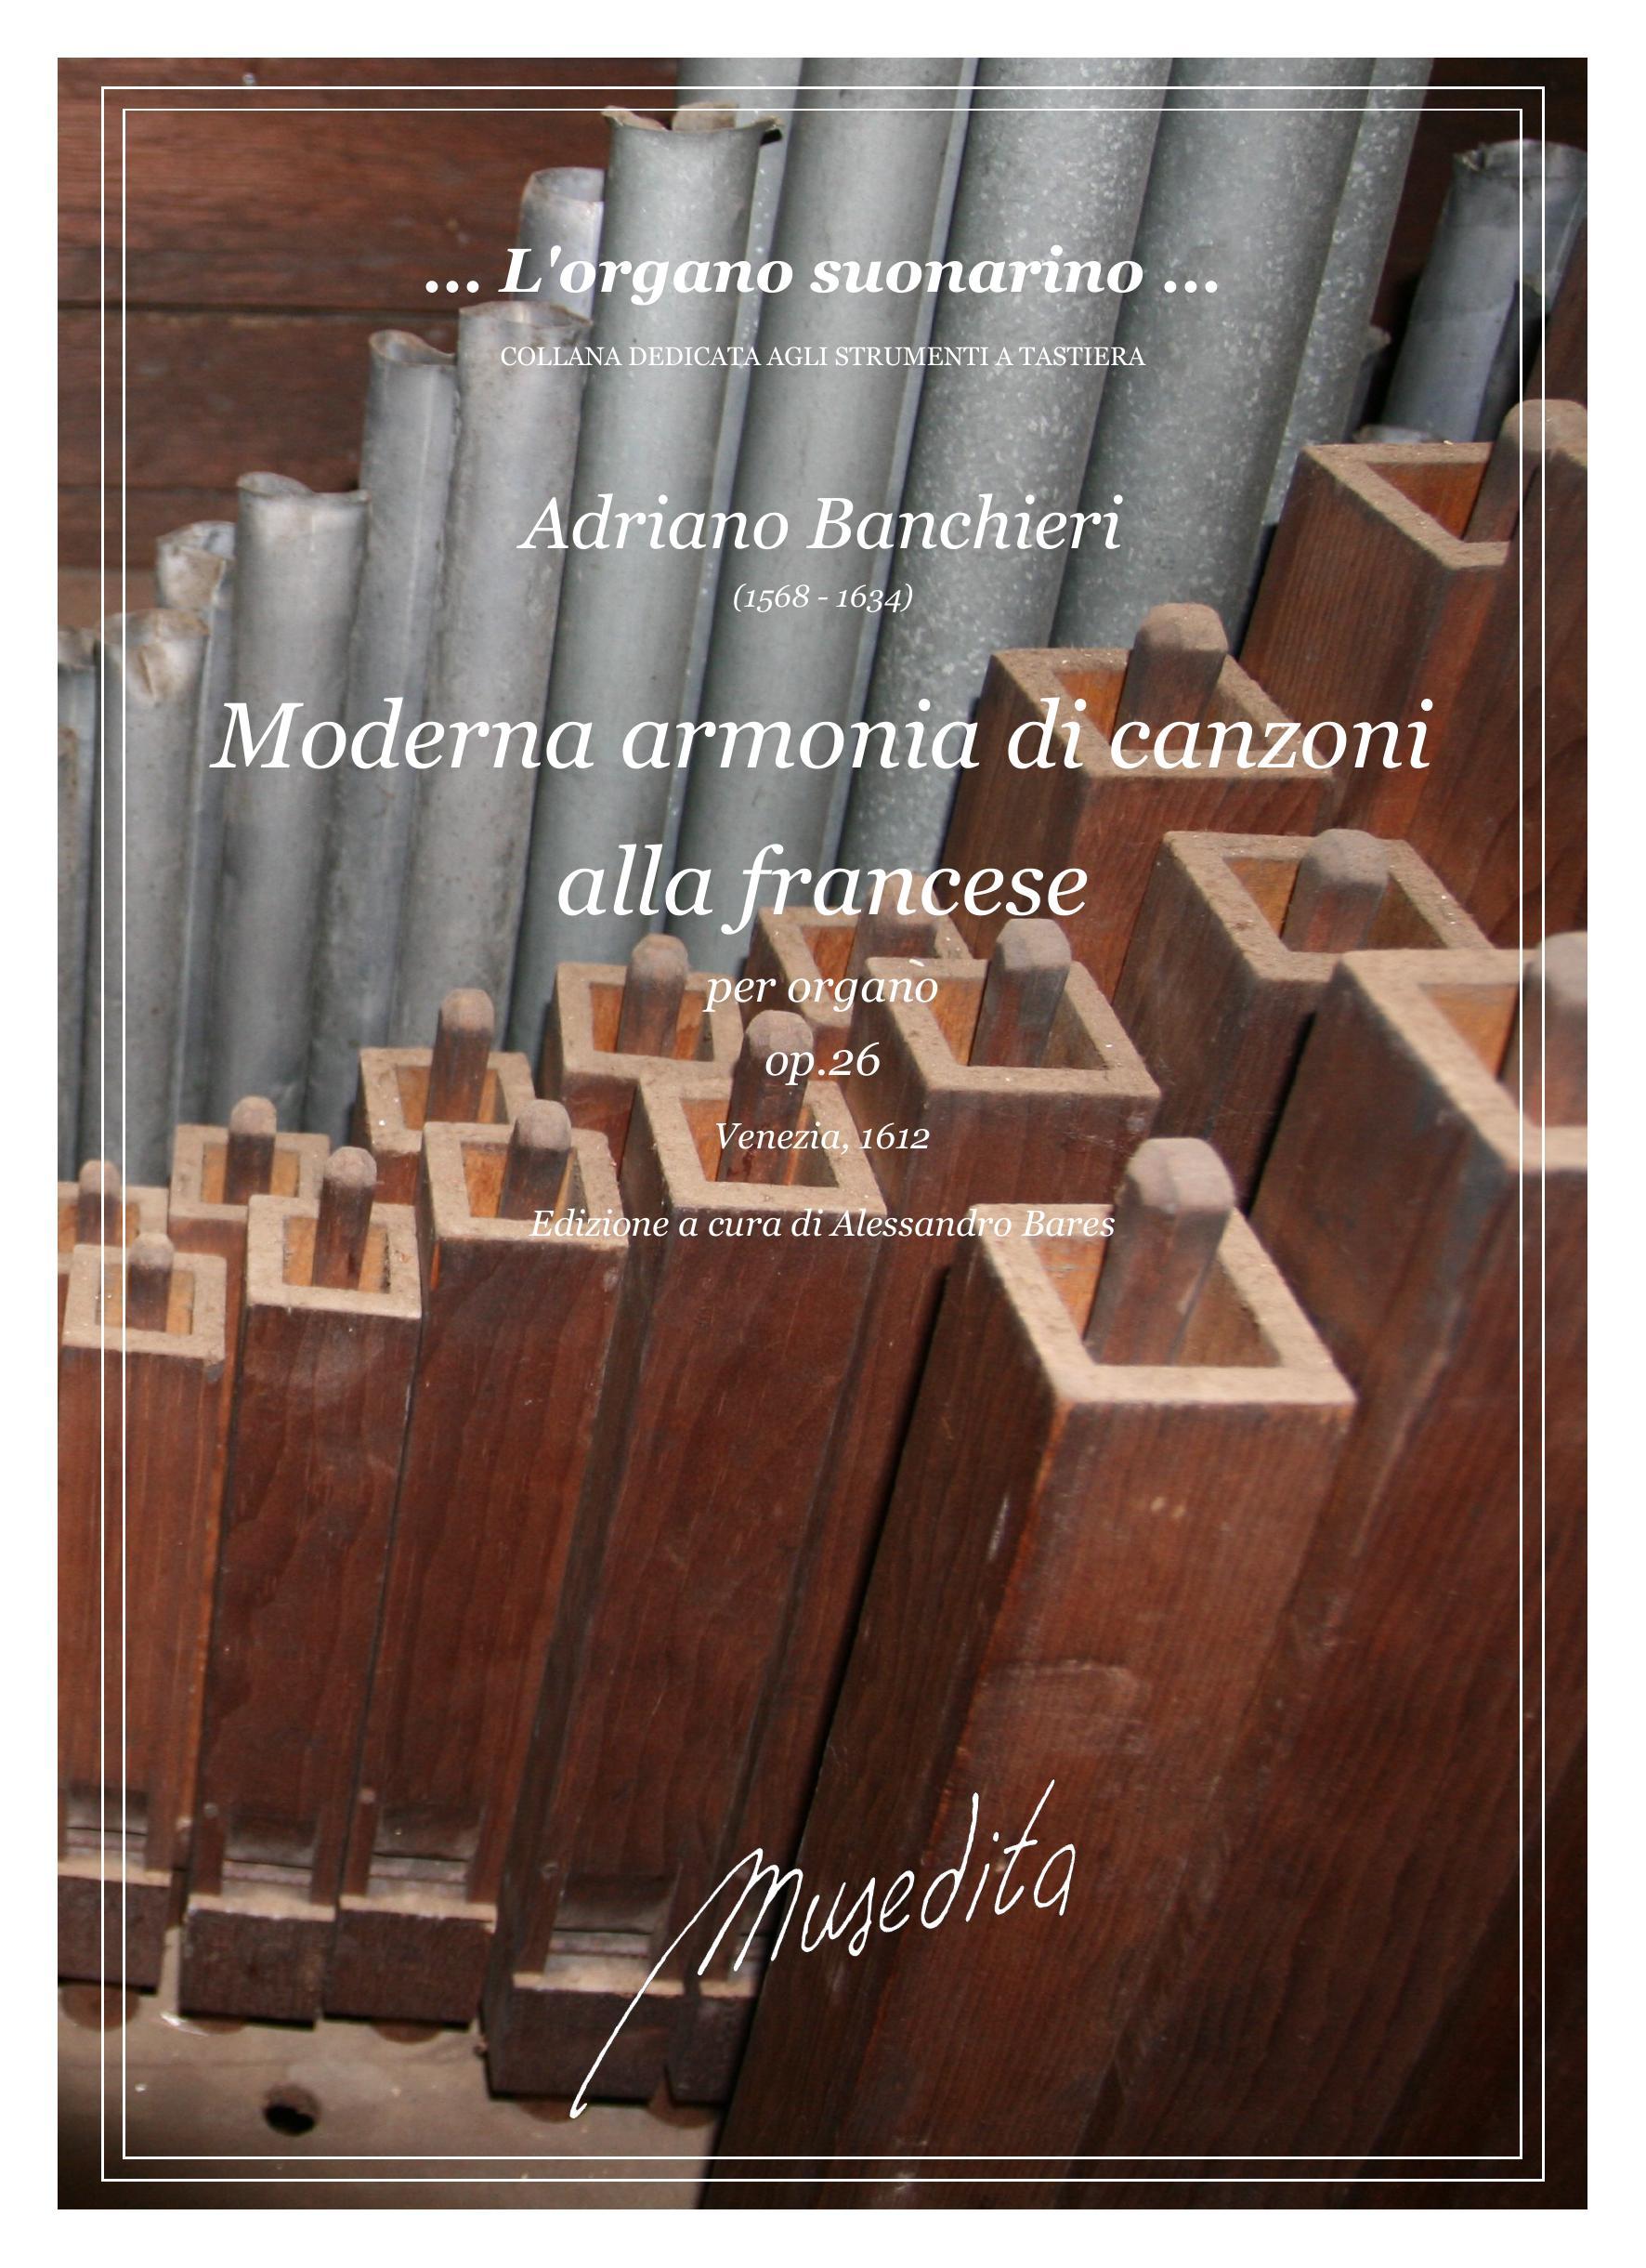 A.Banchieri: Moderna armonia di canzoni alla francese op.26 (Venezia, 1612)